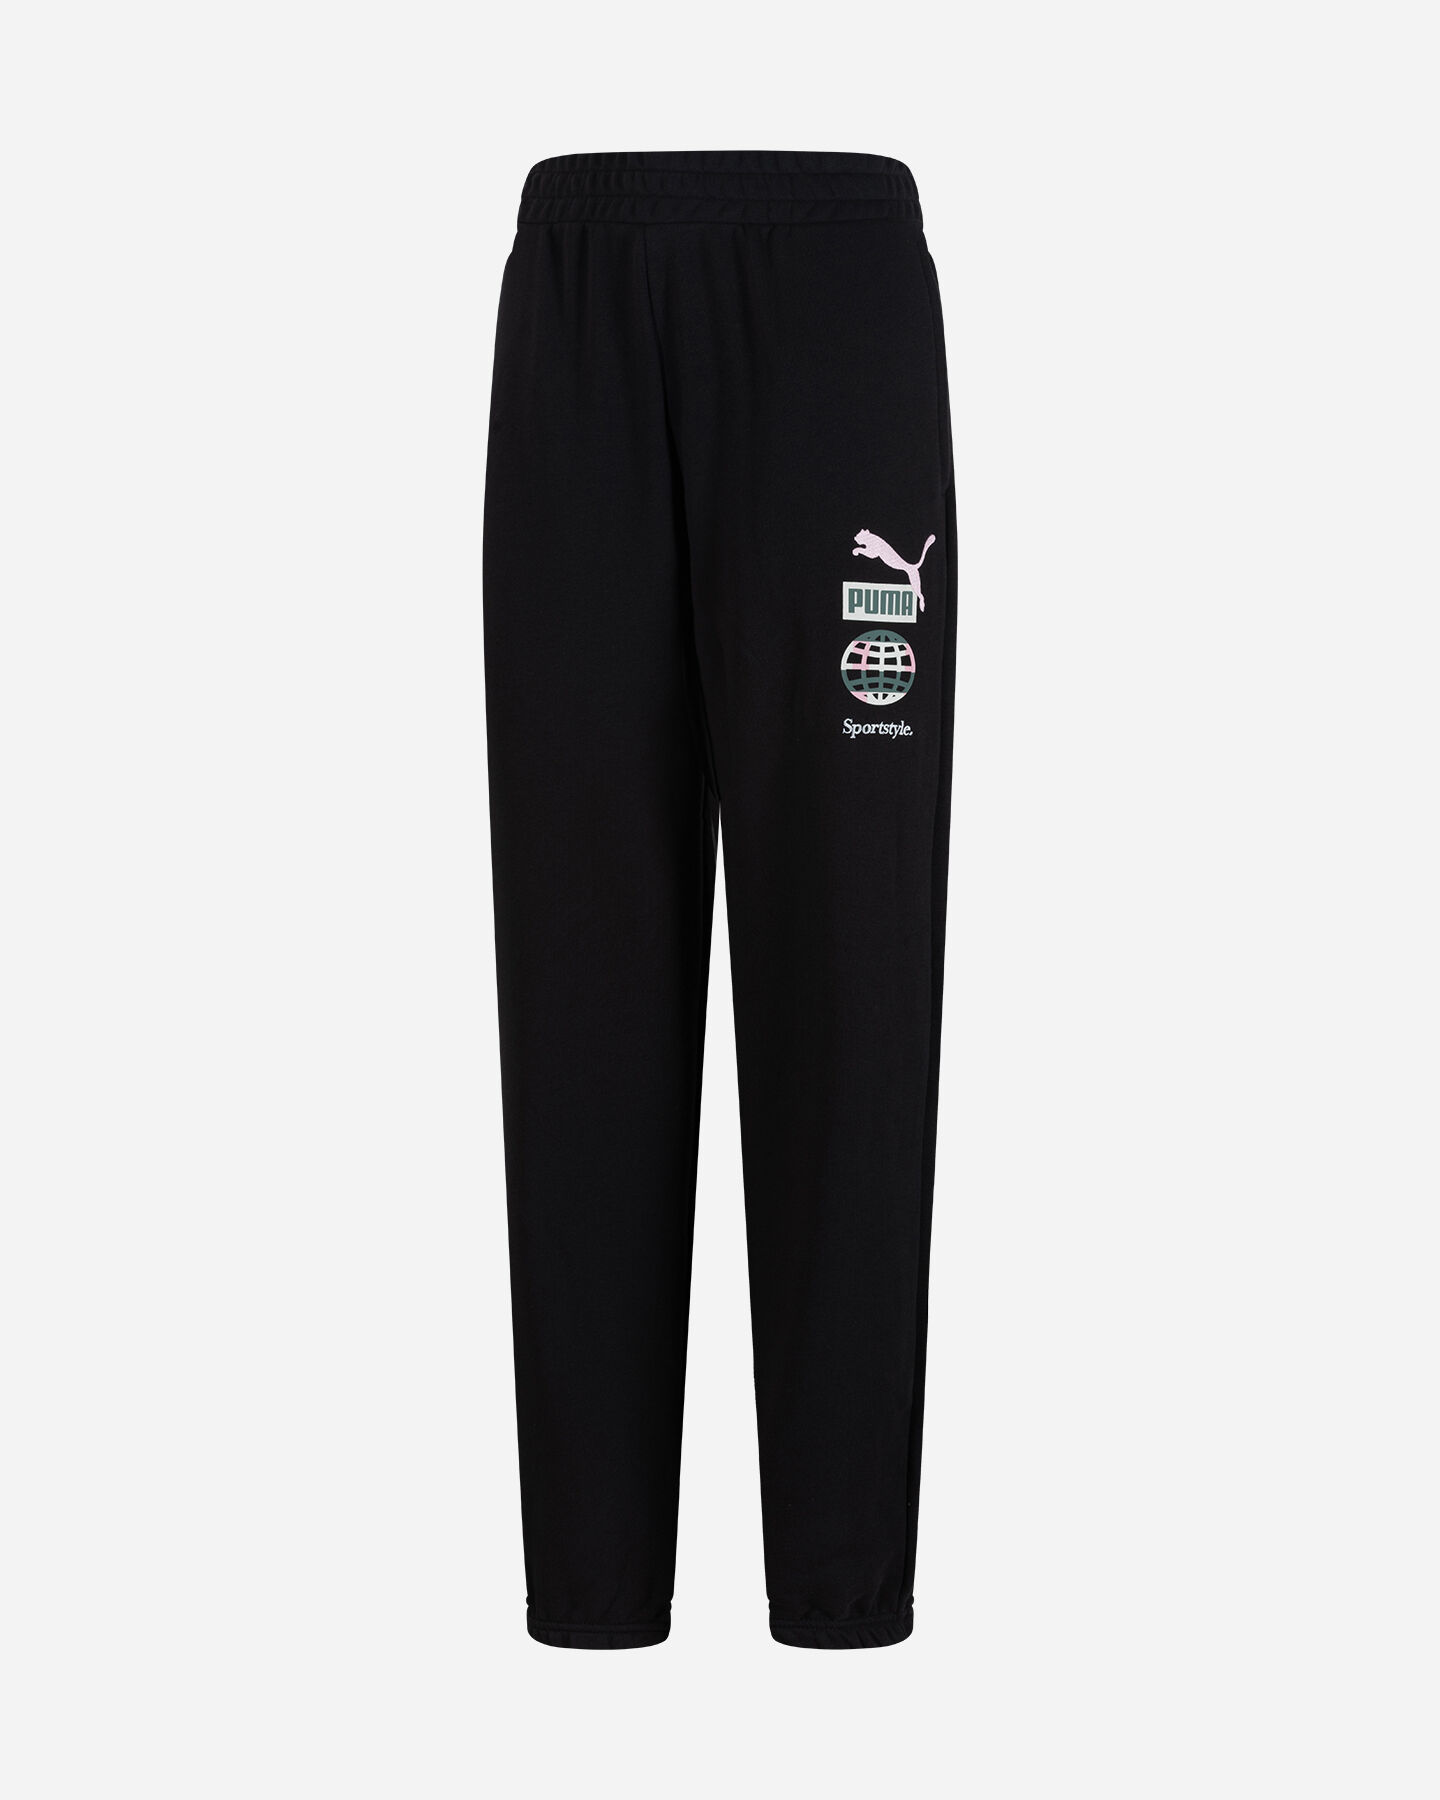  Pantalone PUMA SMALL LOGO CONCEPT W S5615087|01|XS scatto 0